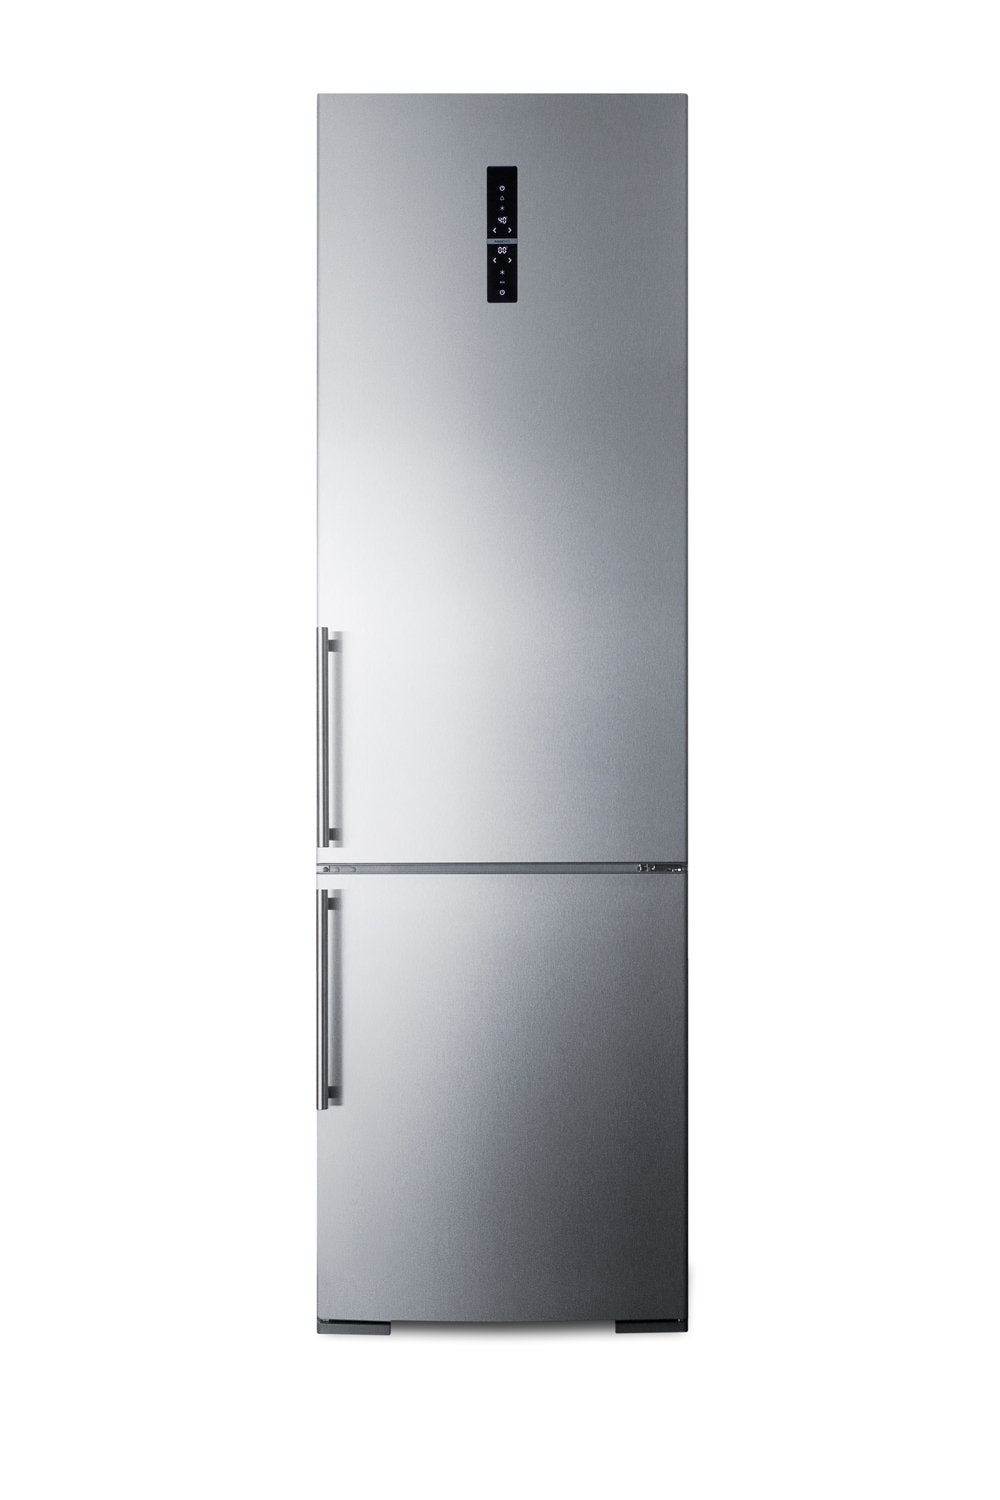 SUMMIT 24 in. Bottom Freezer Refrigerator (FFBF181ES)